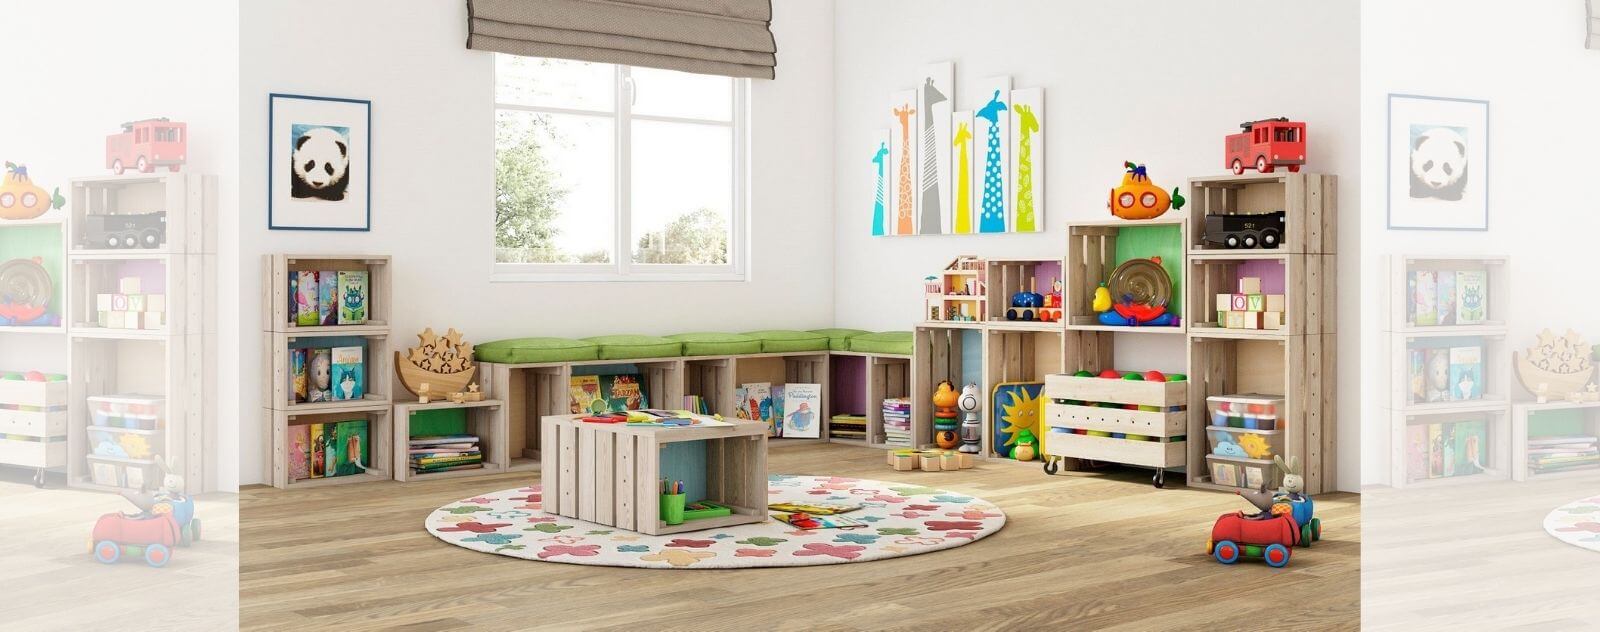 Cajas de almacenamiento para niños en una habitación ordenada con juguetes clasificados